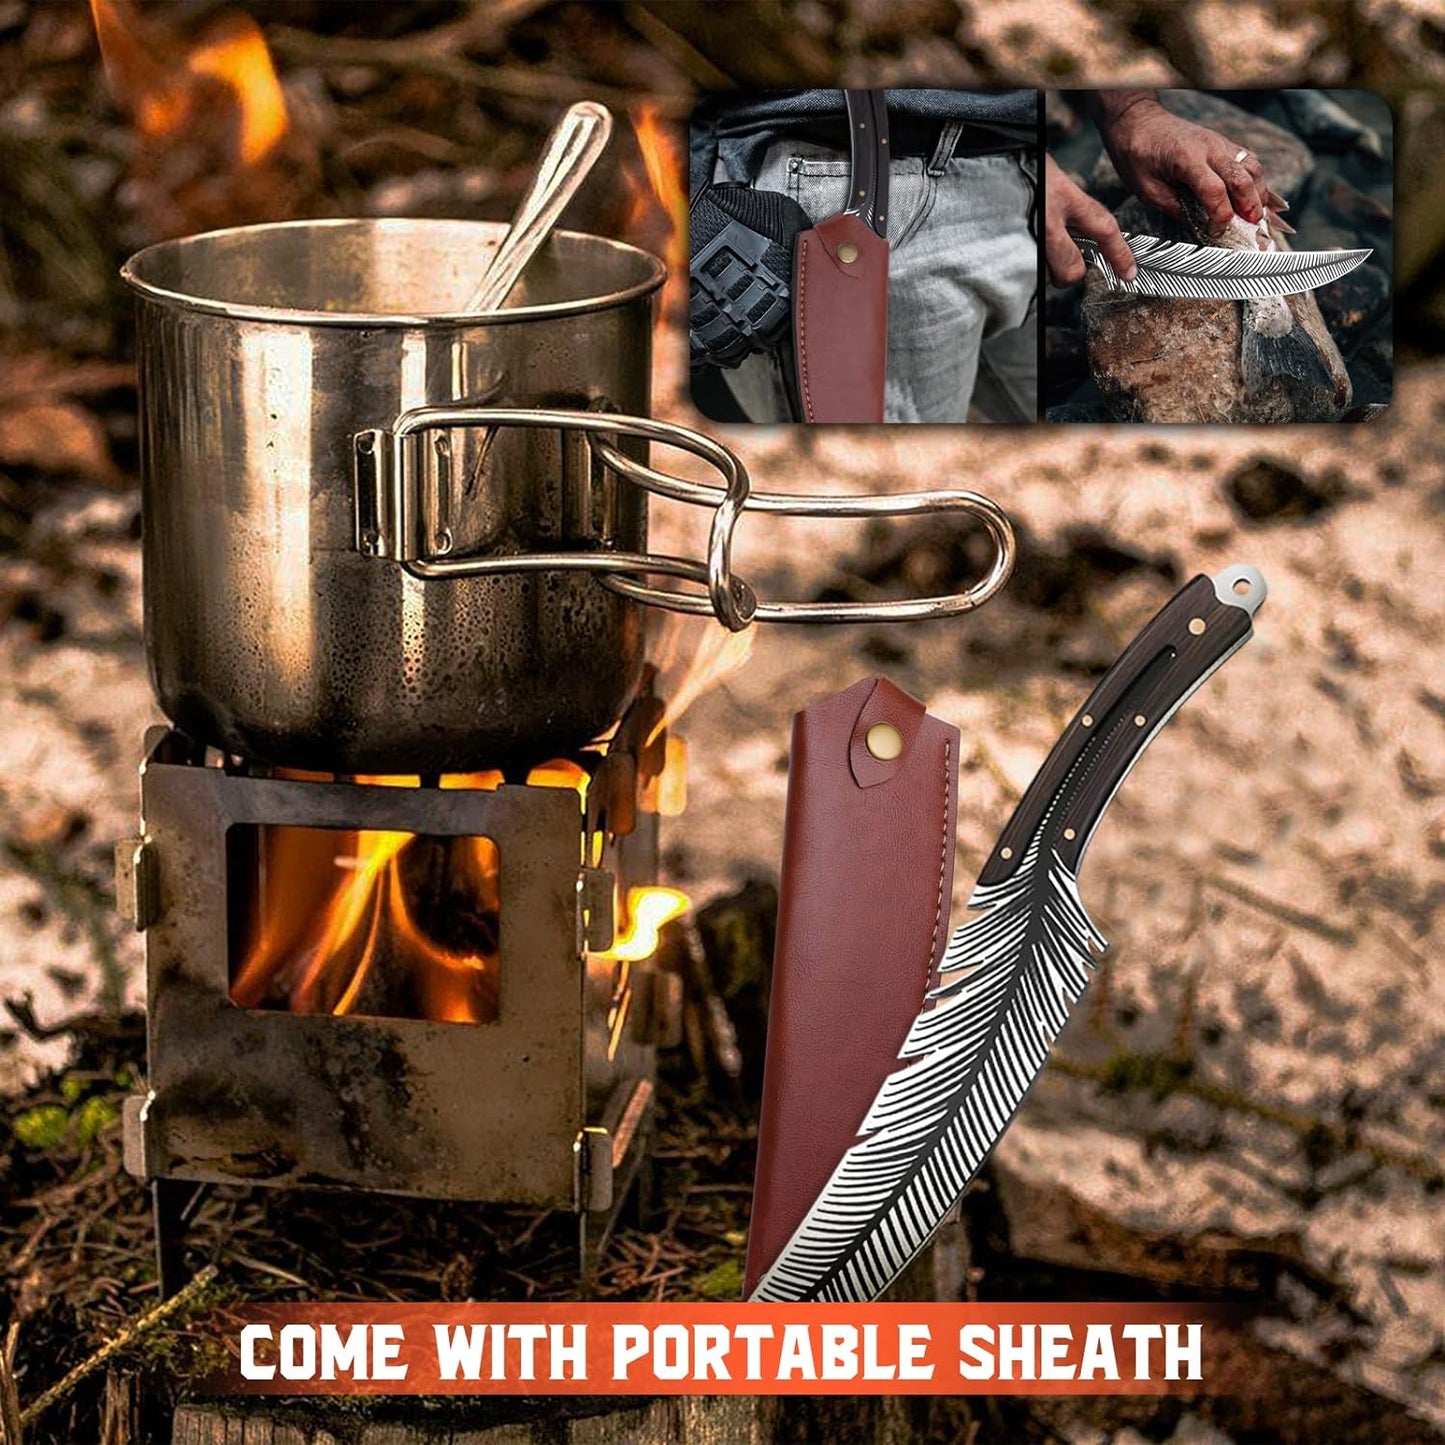 KD Special Designed Knife for Meat High Carbon Steel Viking Fillet Knife for Brisket